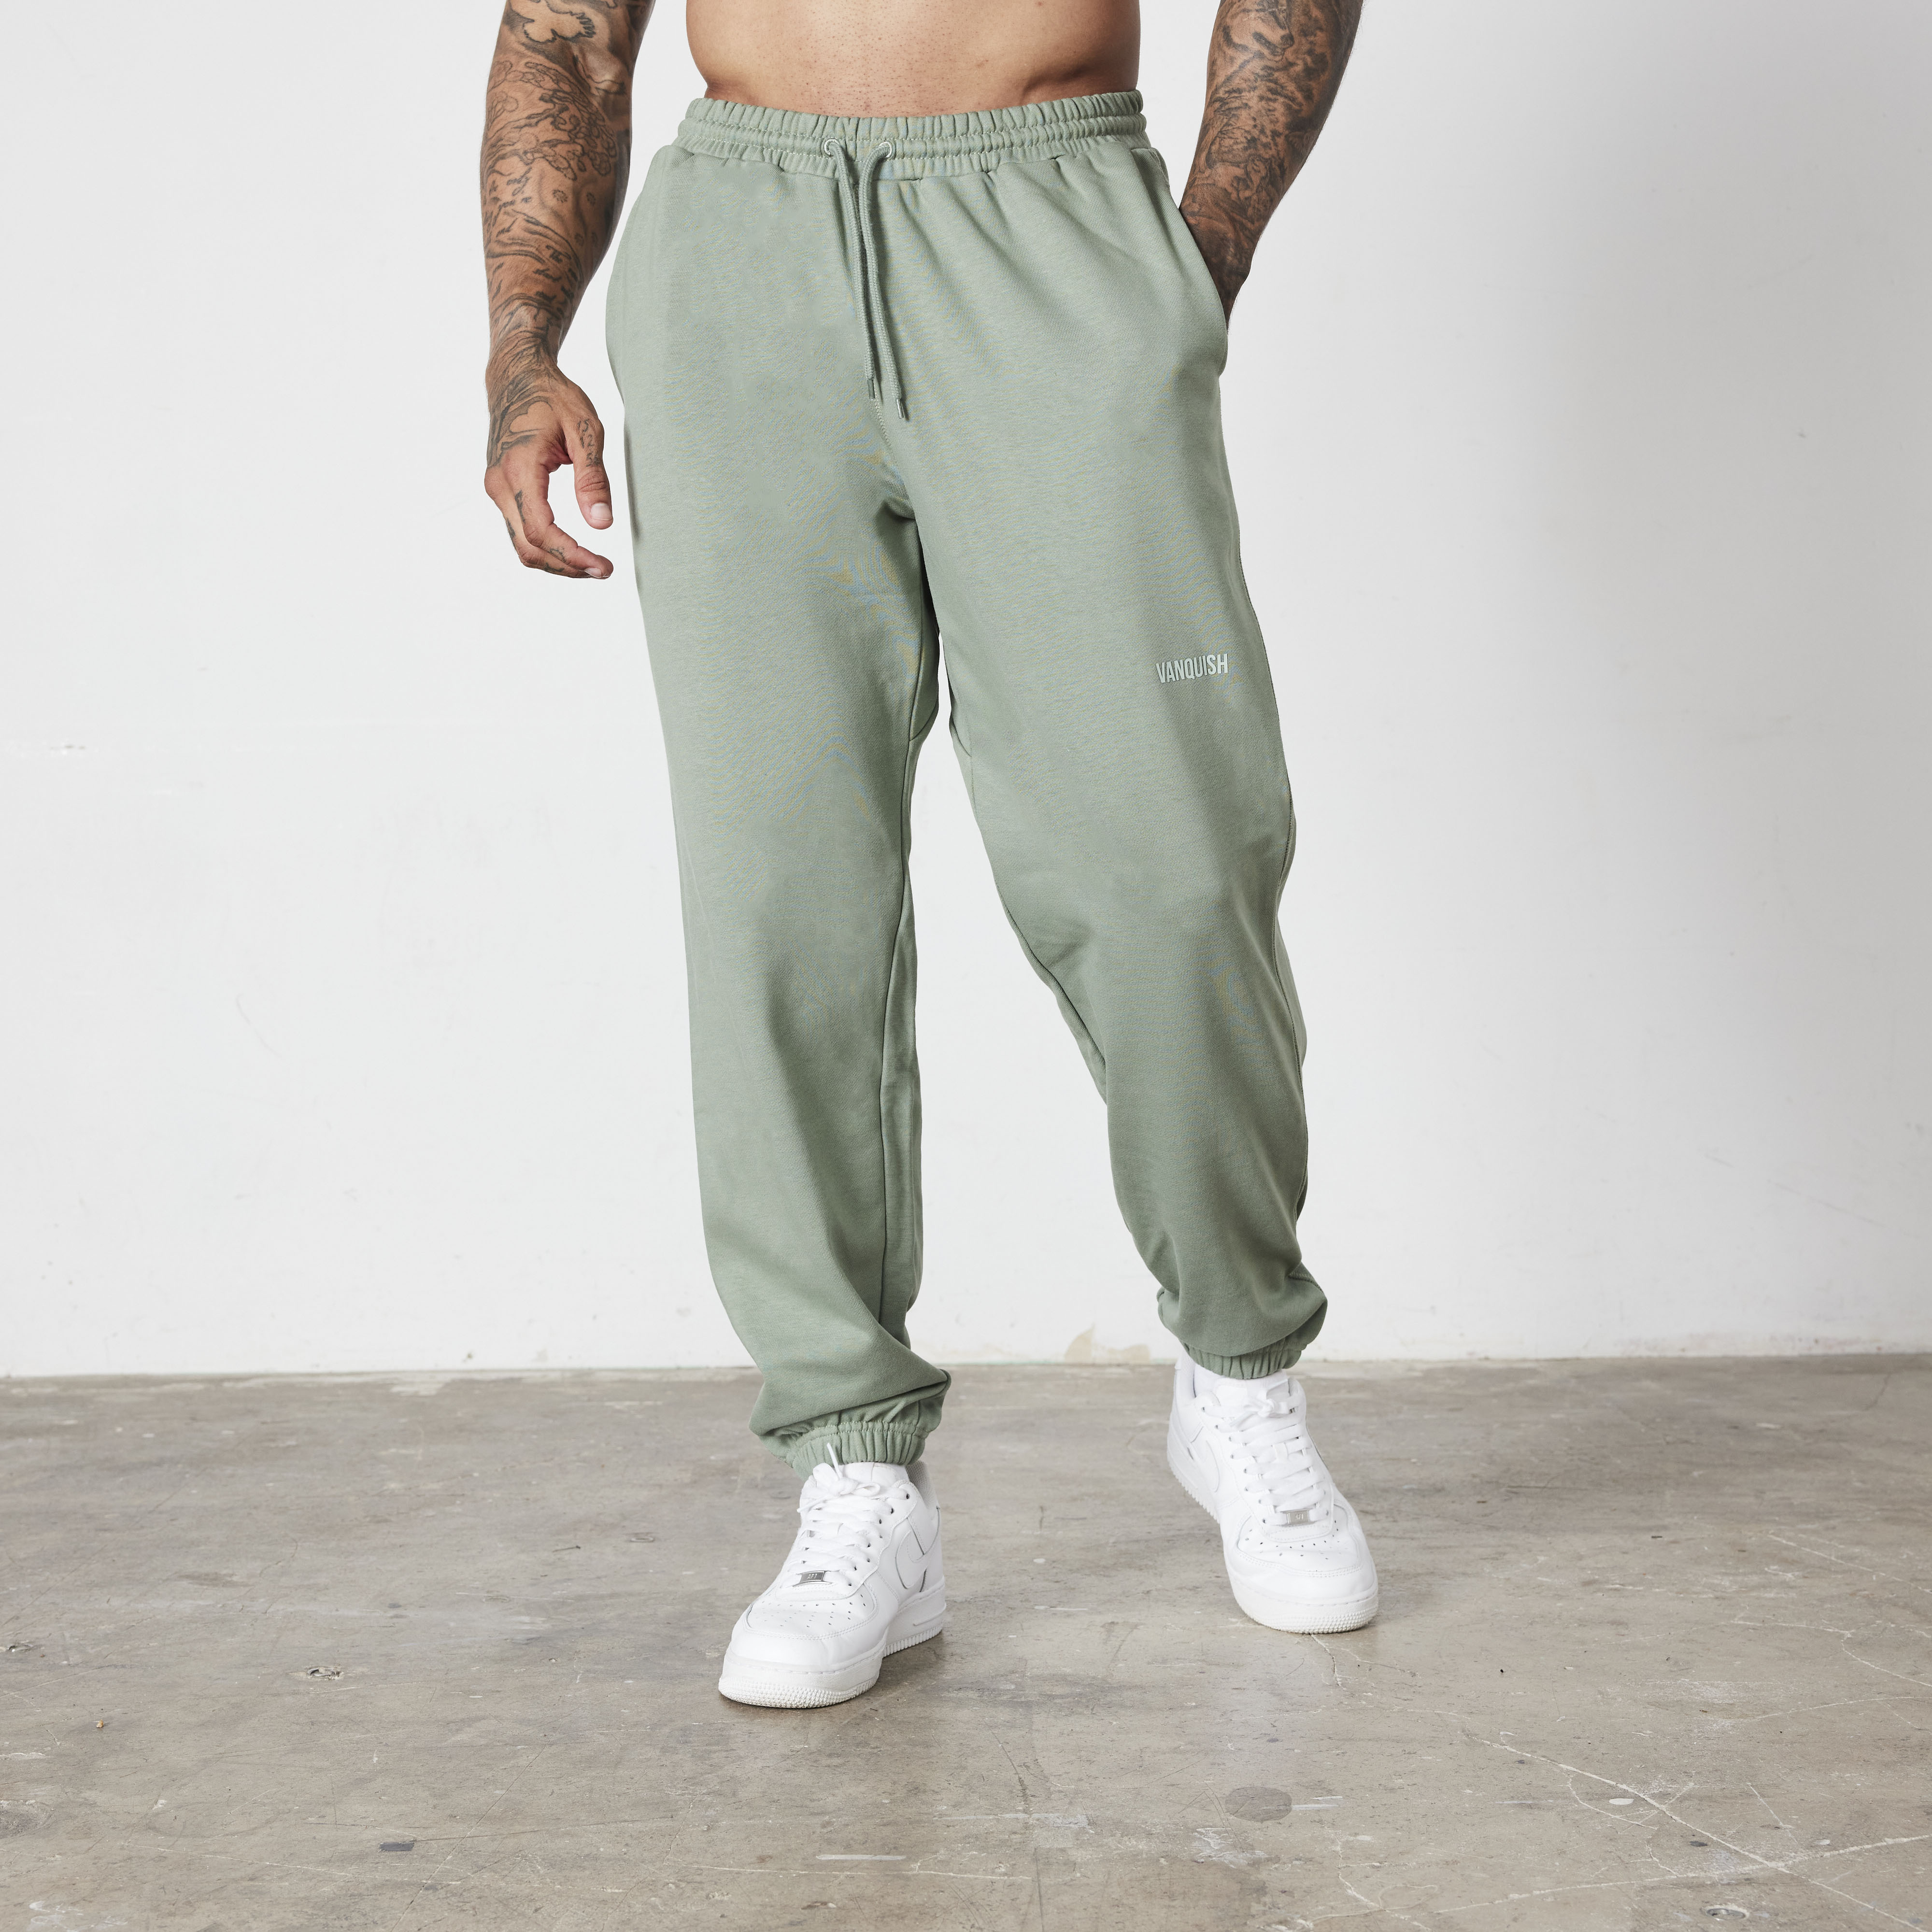 Vanquish Essential Green Oversized Sweatpants